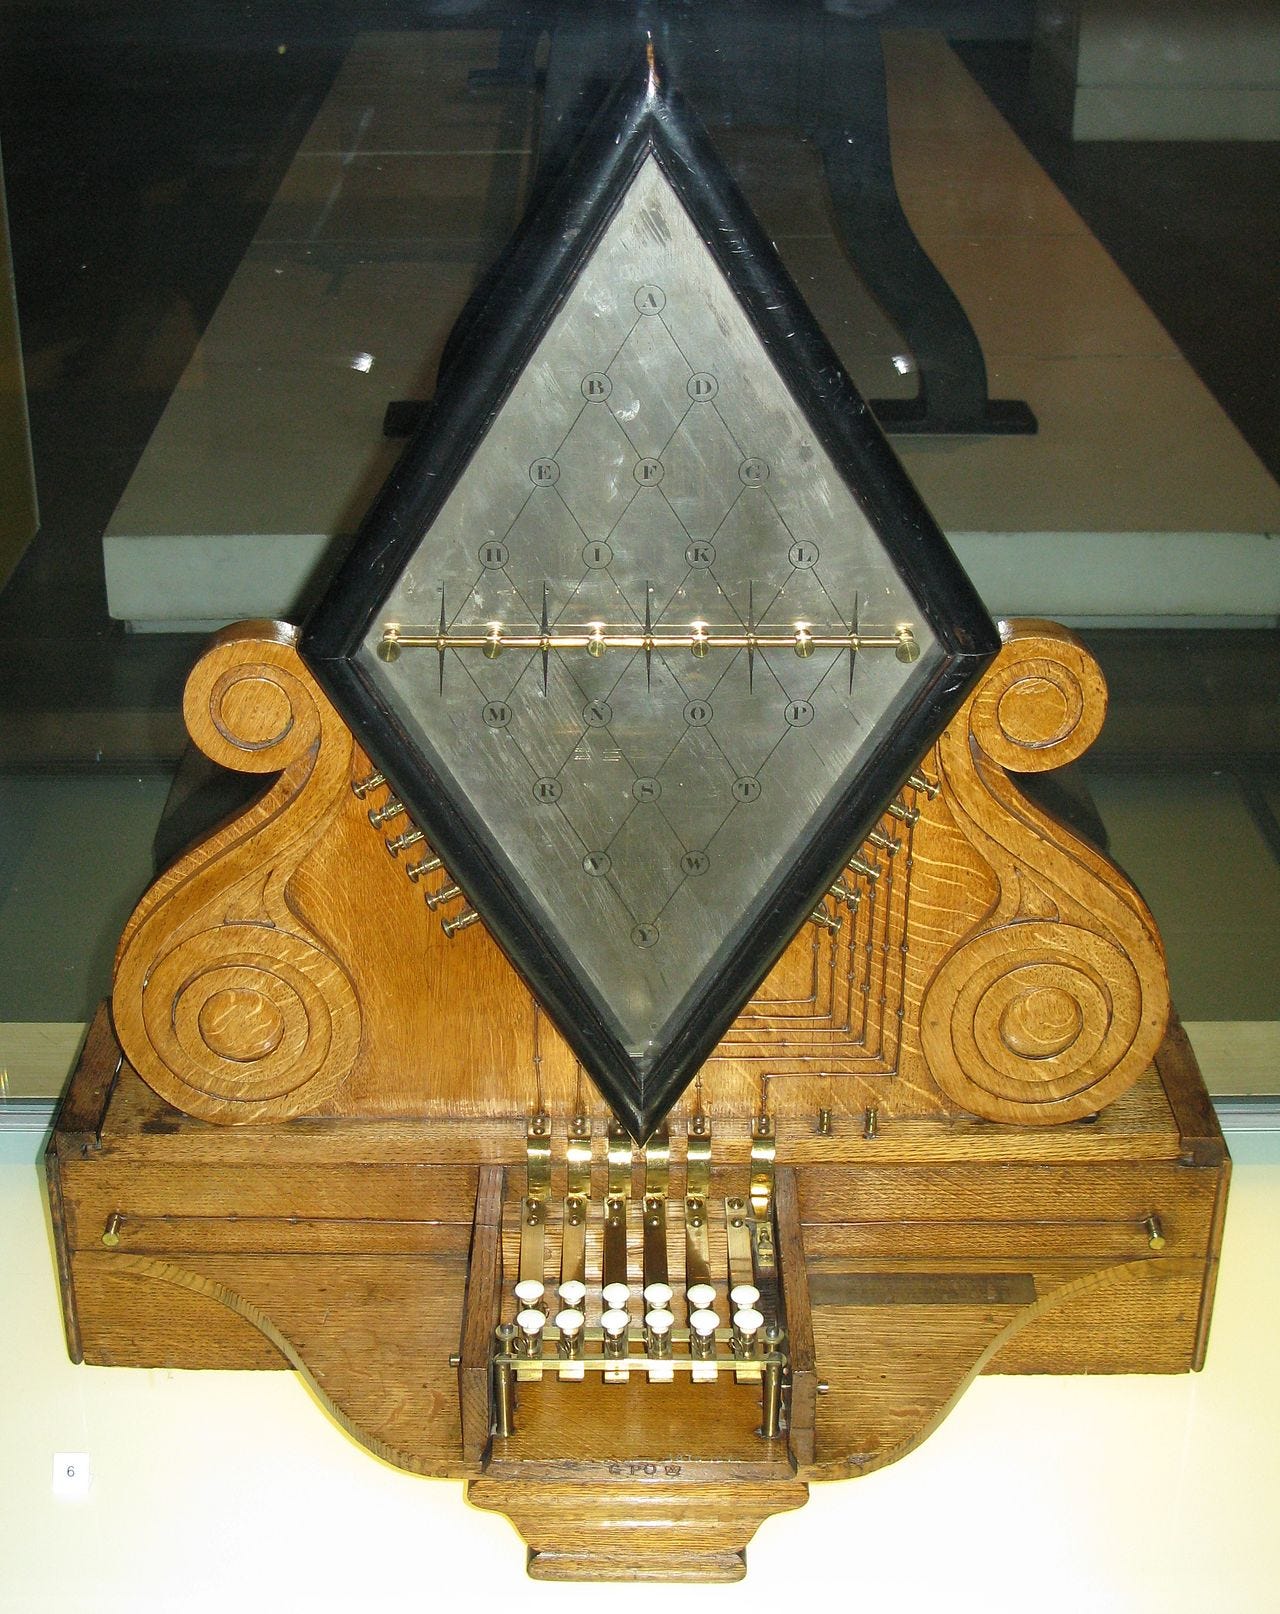 Telégrafo de Cooke e Wheatstone, que exibia as letras transmitidas com um sistema de luzes e ponteiros.